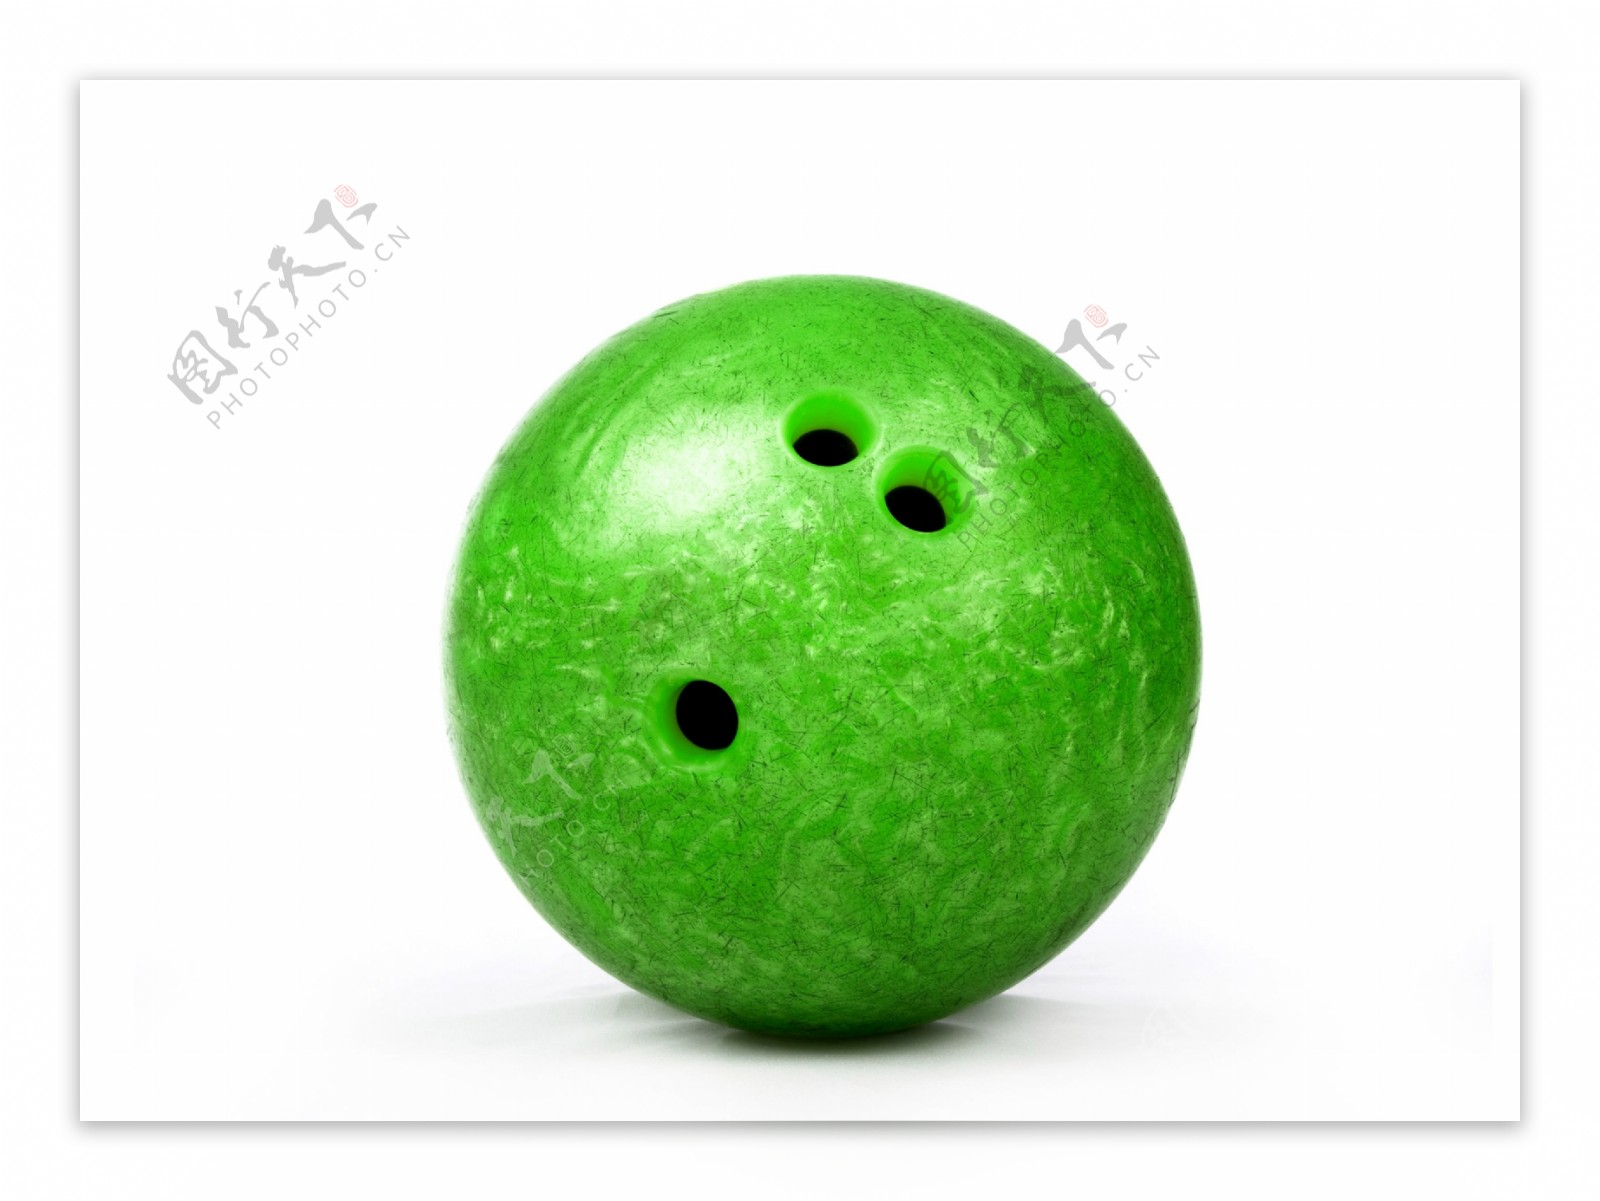 绿色保龄球图片